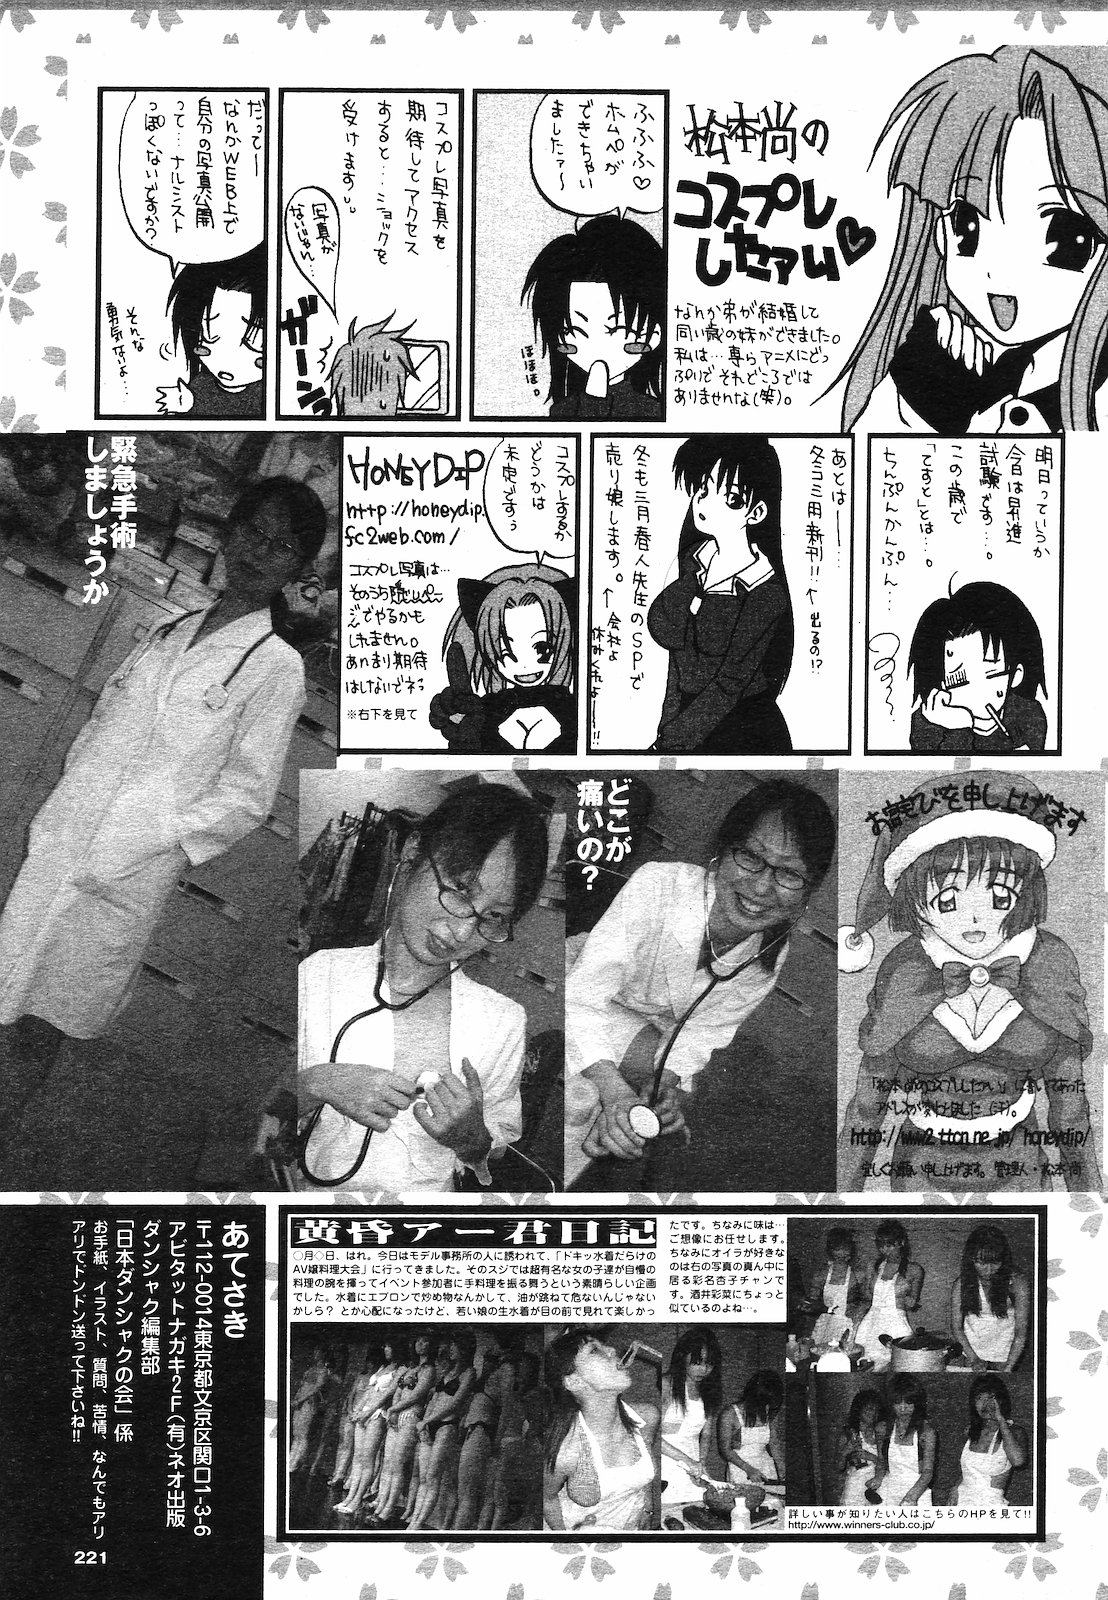 [雑誌] COMIC ダンシャク 男爵 2003年02月号